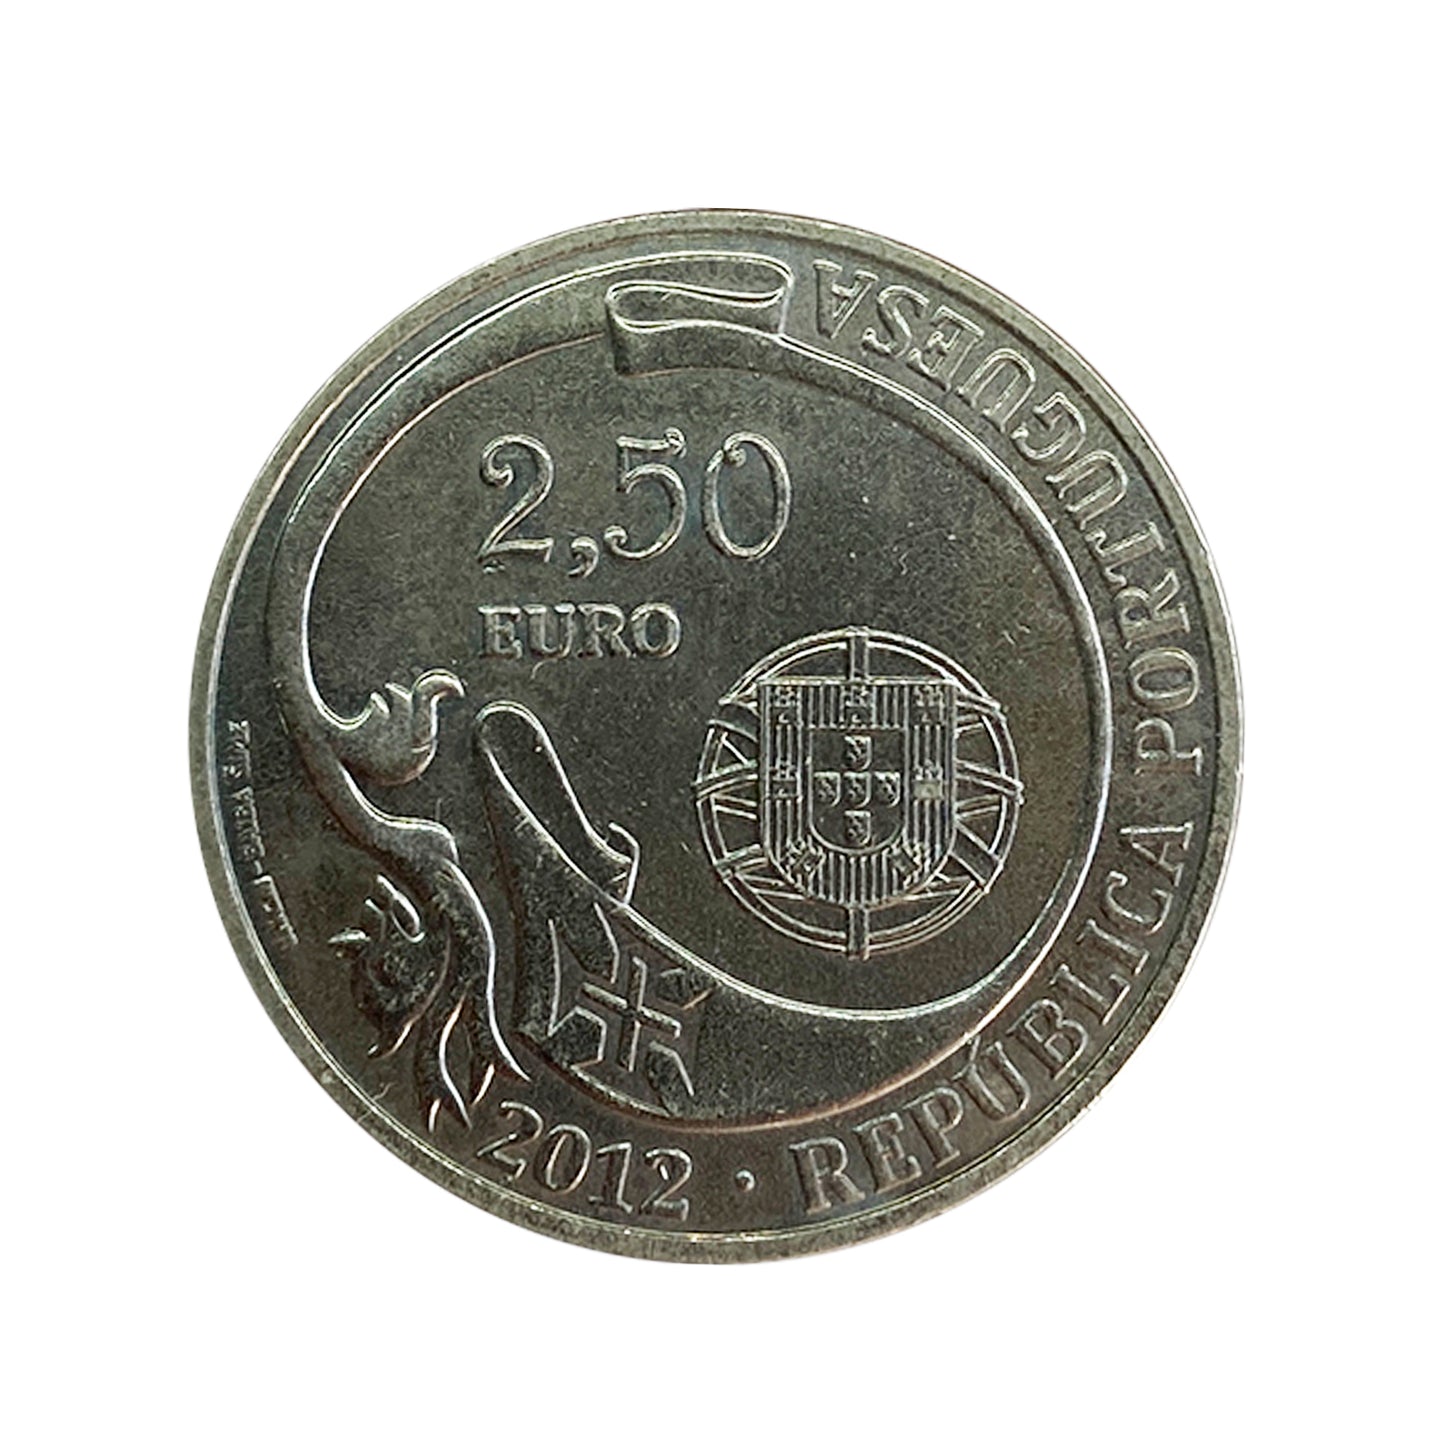 Portugal - Moneda 2,5 euros 2012 - 75 Años Buque escuela Sagres